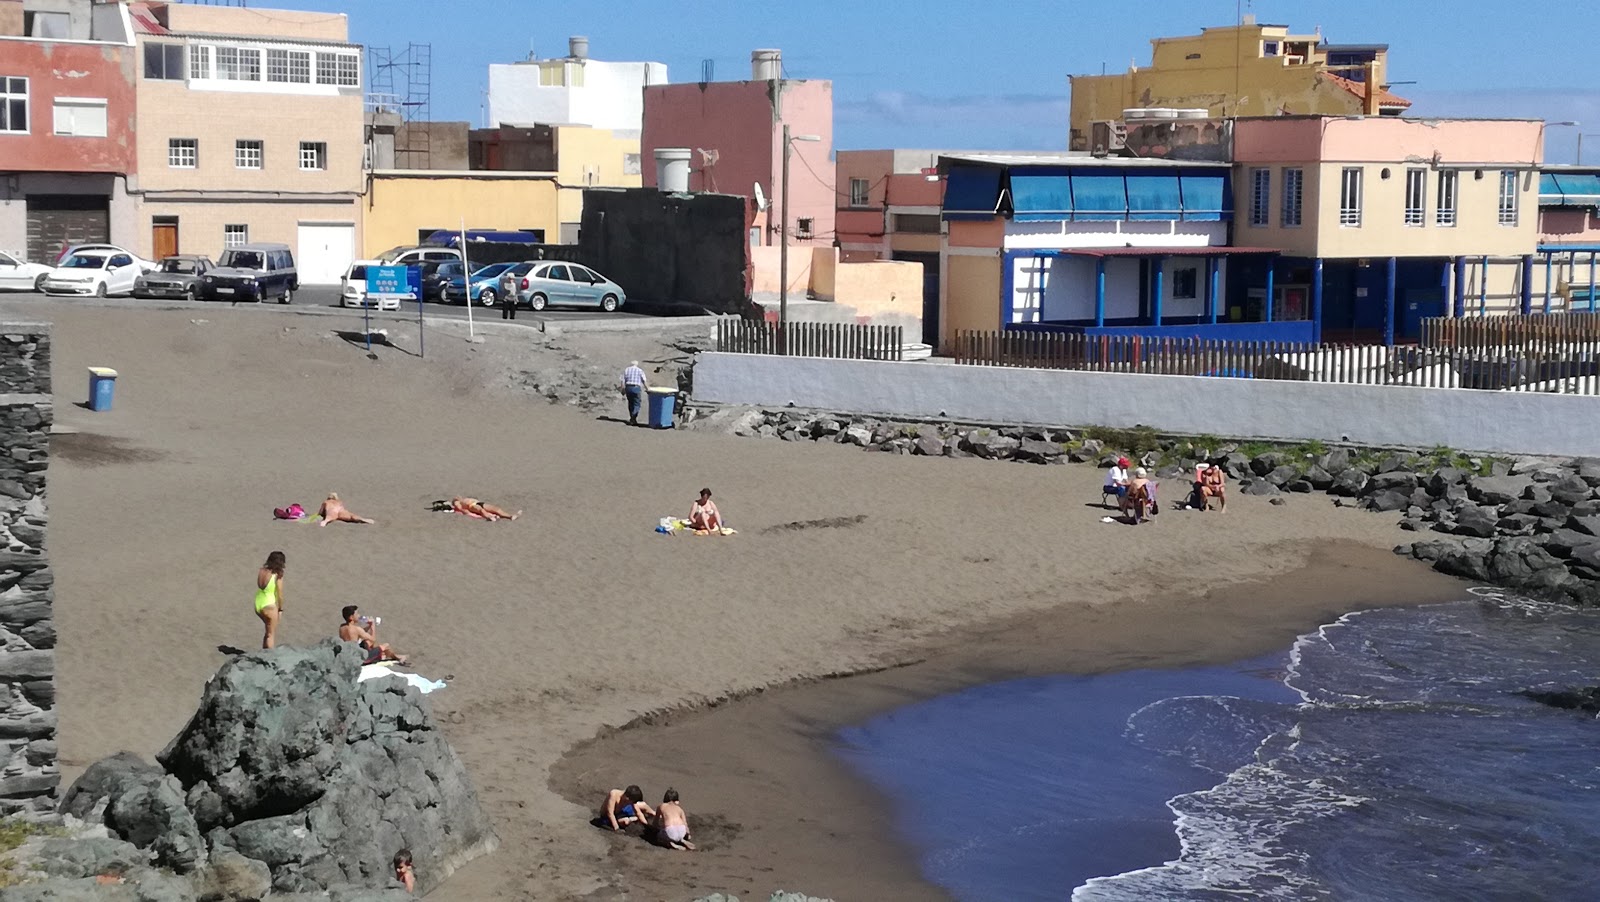 Zdjęcie Playa del Muelle z poziomem czystości wysoki